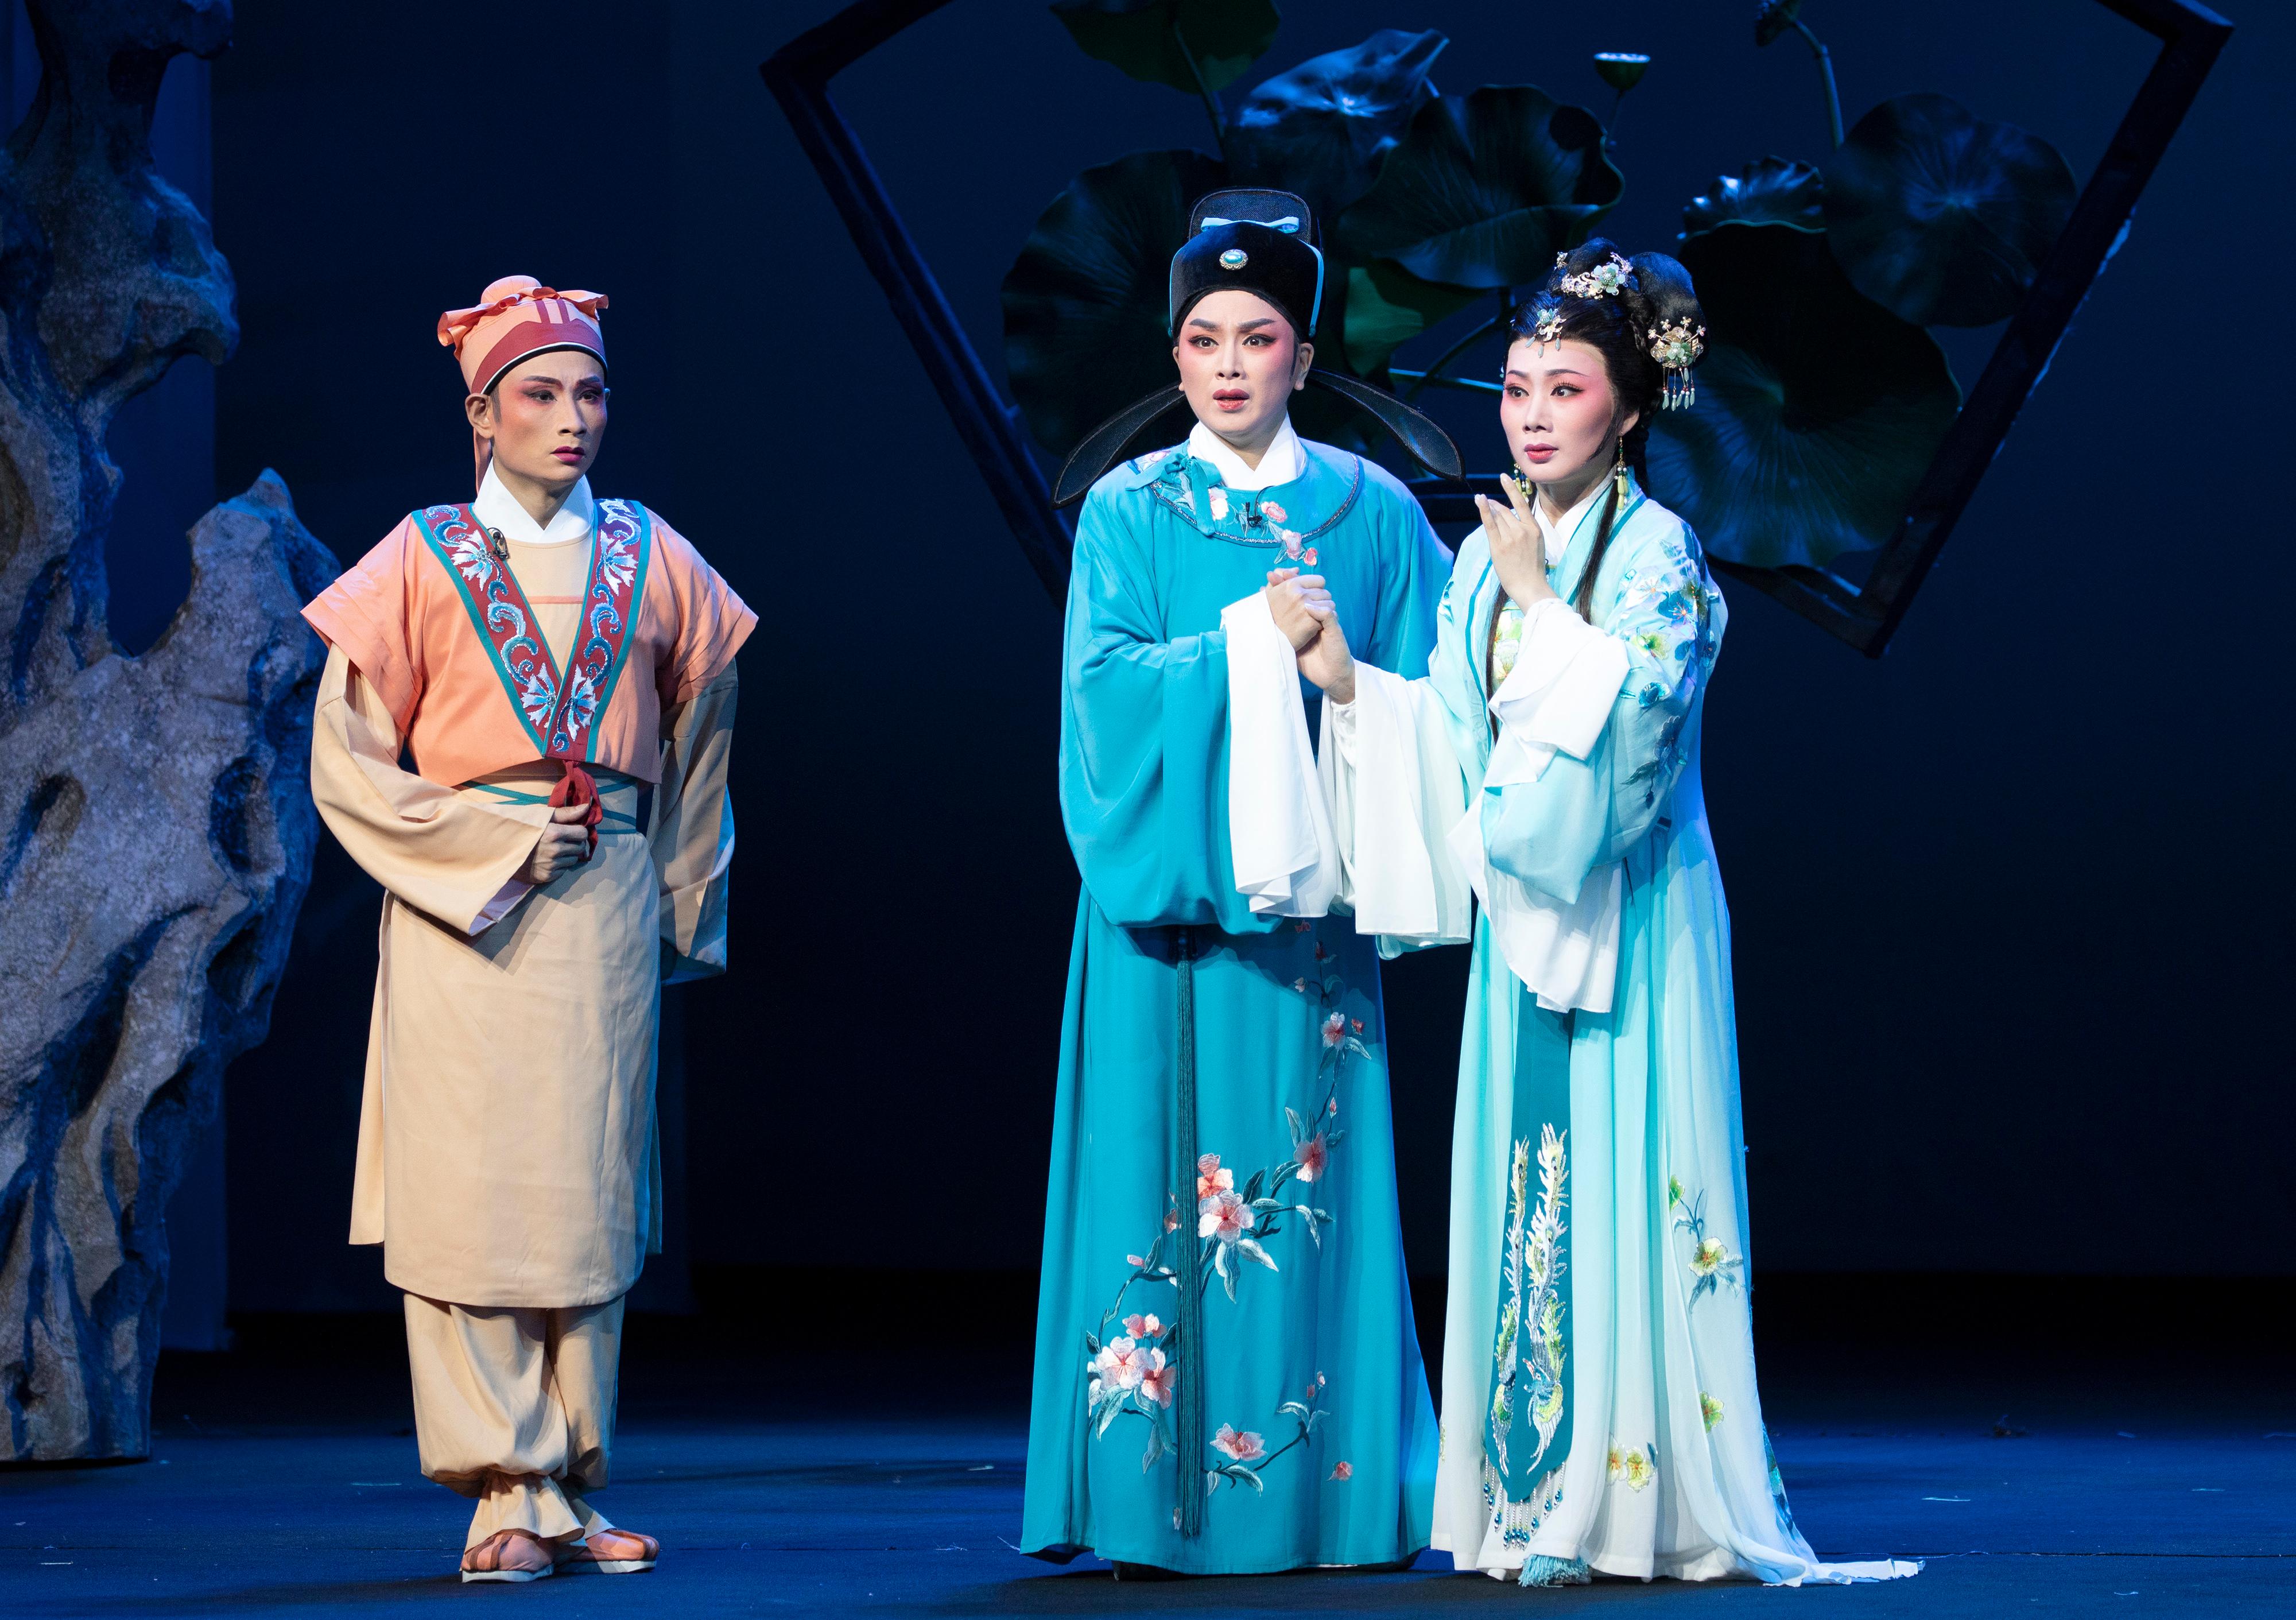 广东潮剧院一团与香港新韩江潮剧团再度携手，于首届「中华文化节」带来三场精彩潮剧。图示《李商隐》剧照。